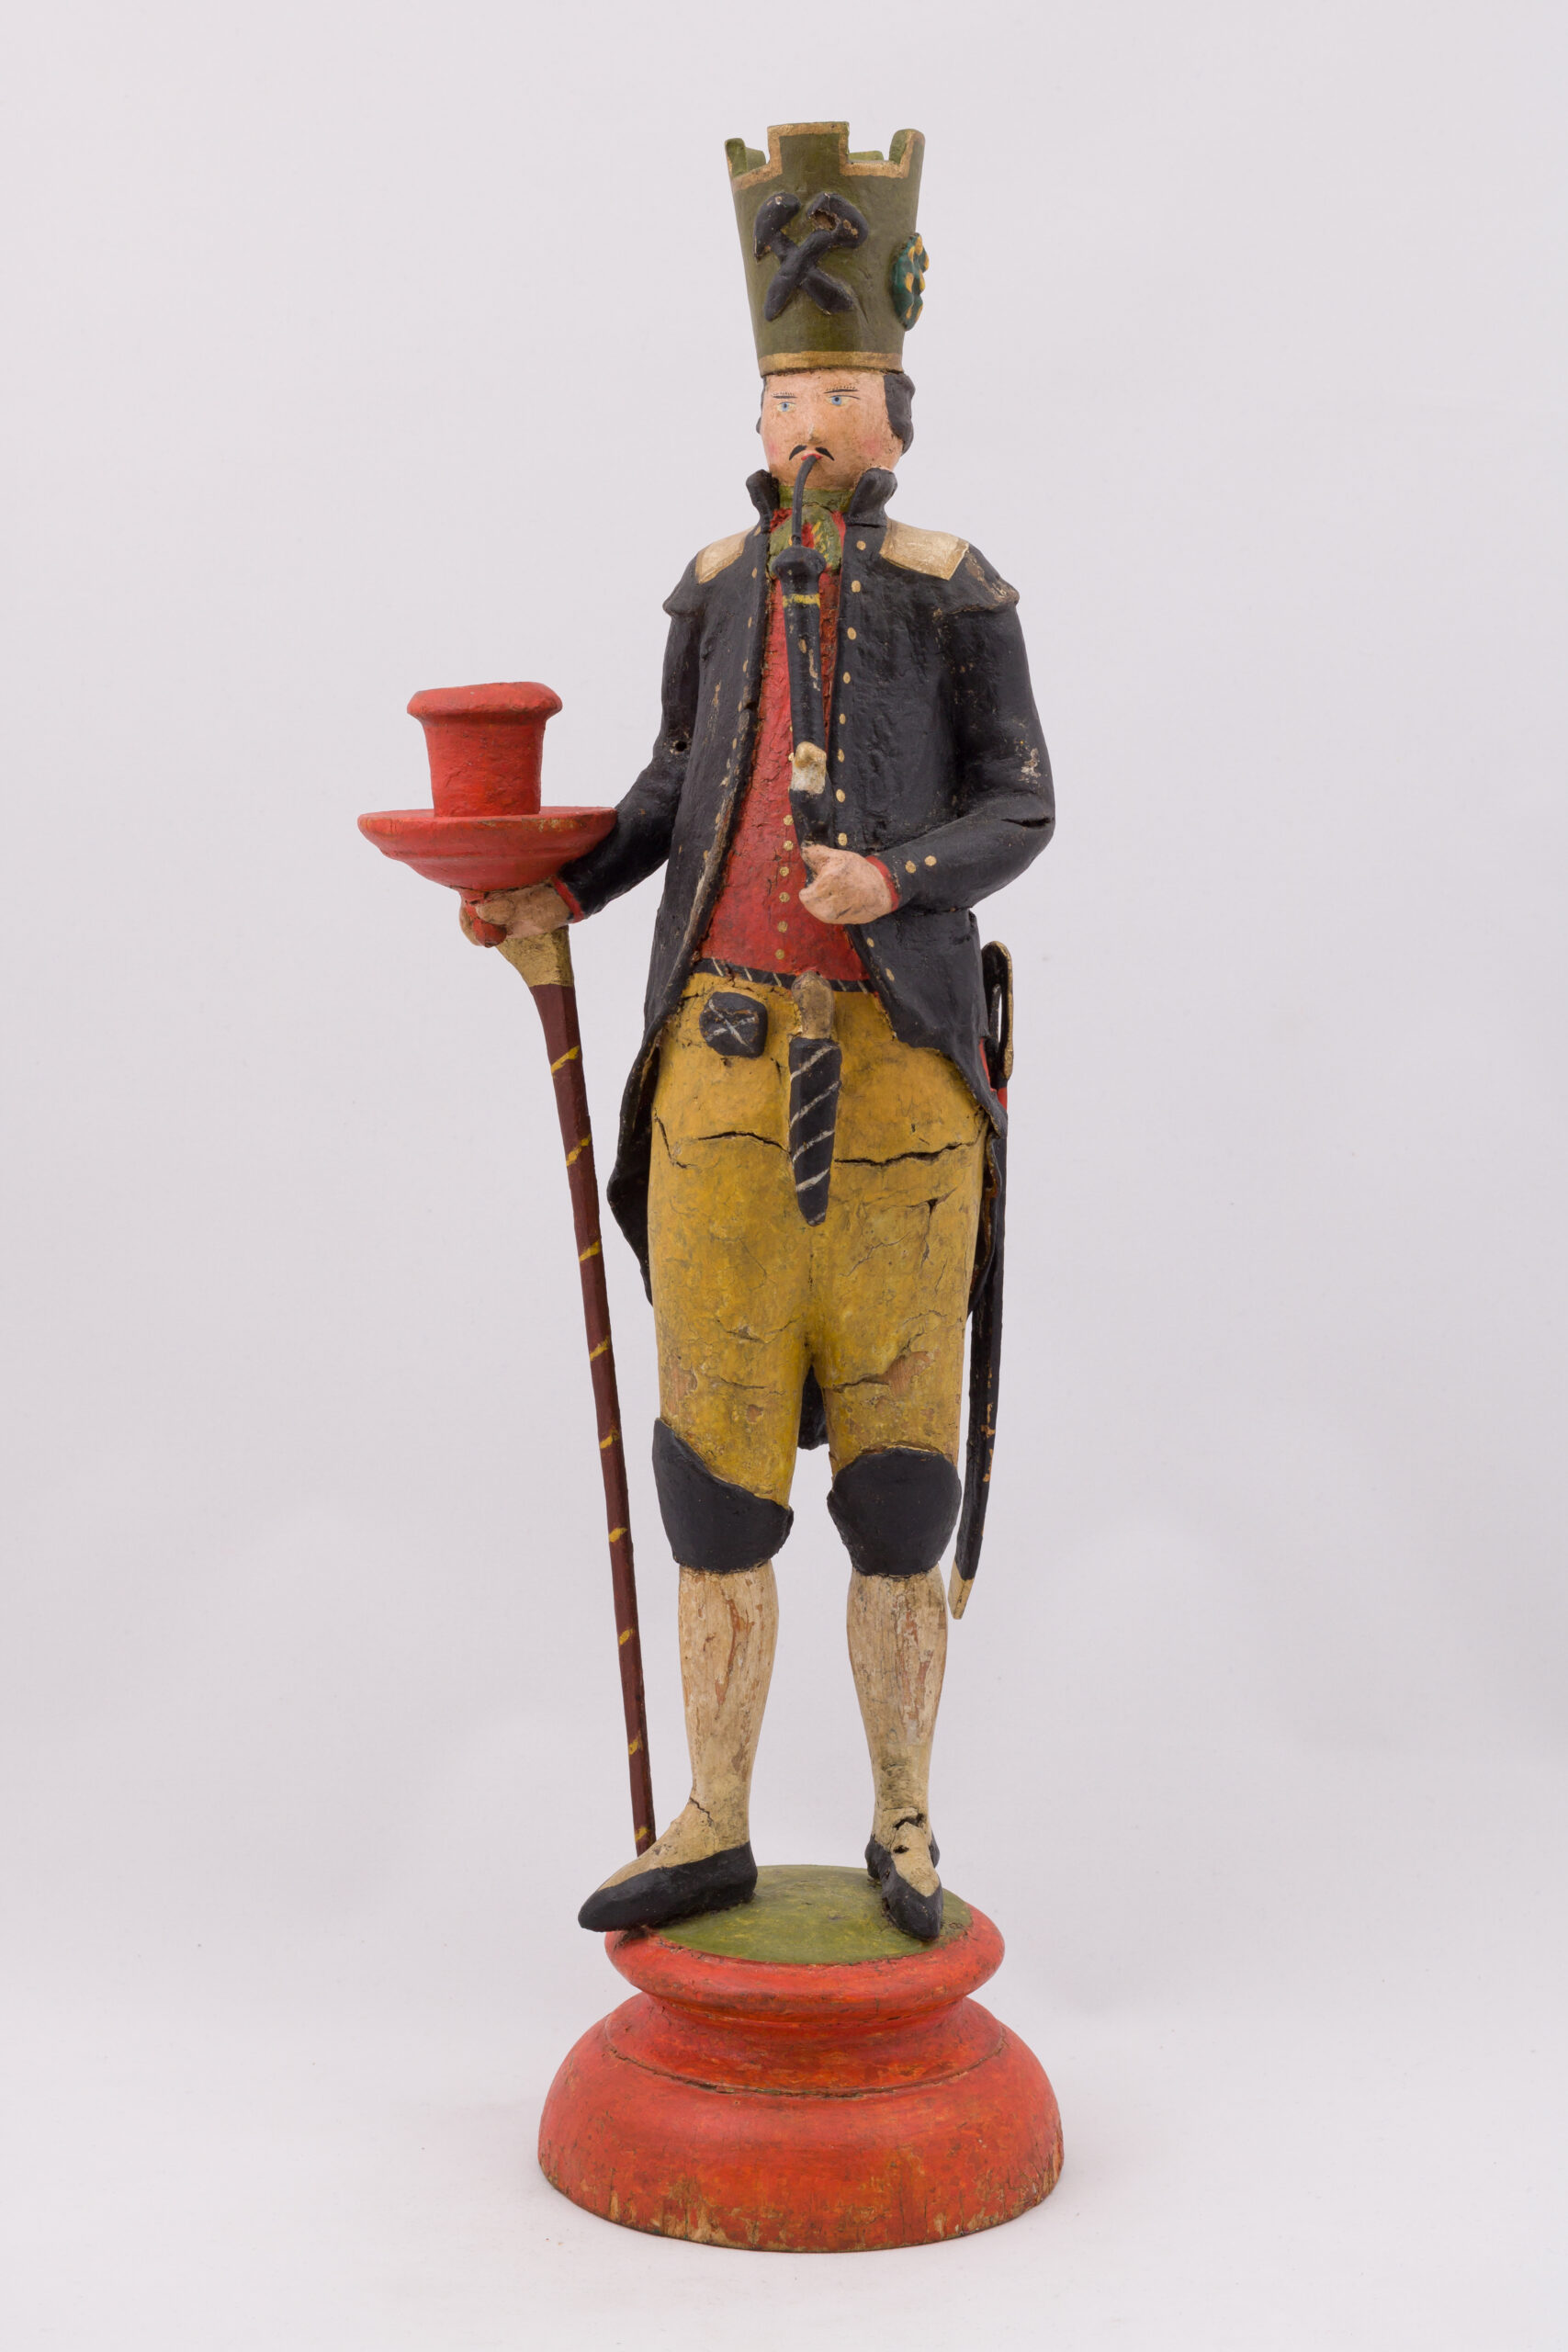 10 Lichterbergmann, Hersteller_ unbekannt, Schneeberg um 1830, Figur wurde freigelegt, farbliche Retusche